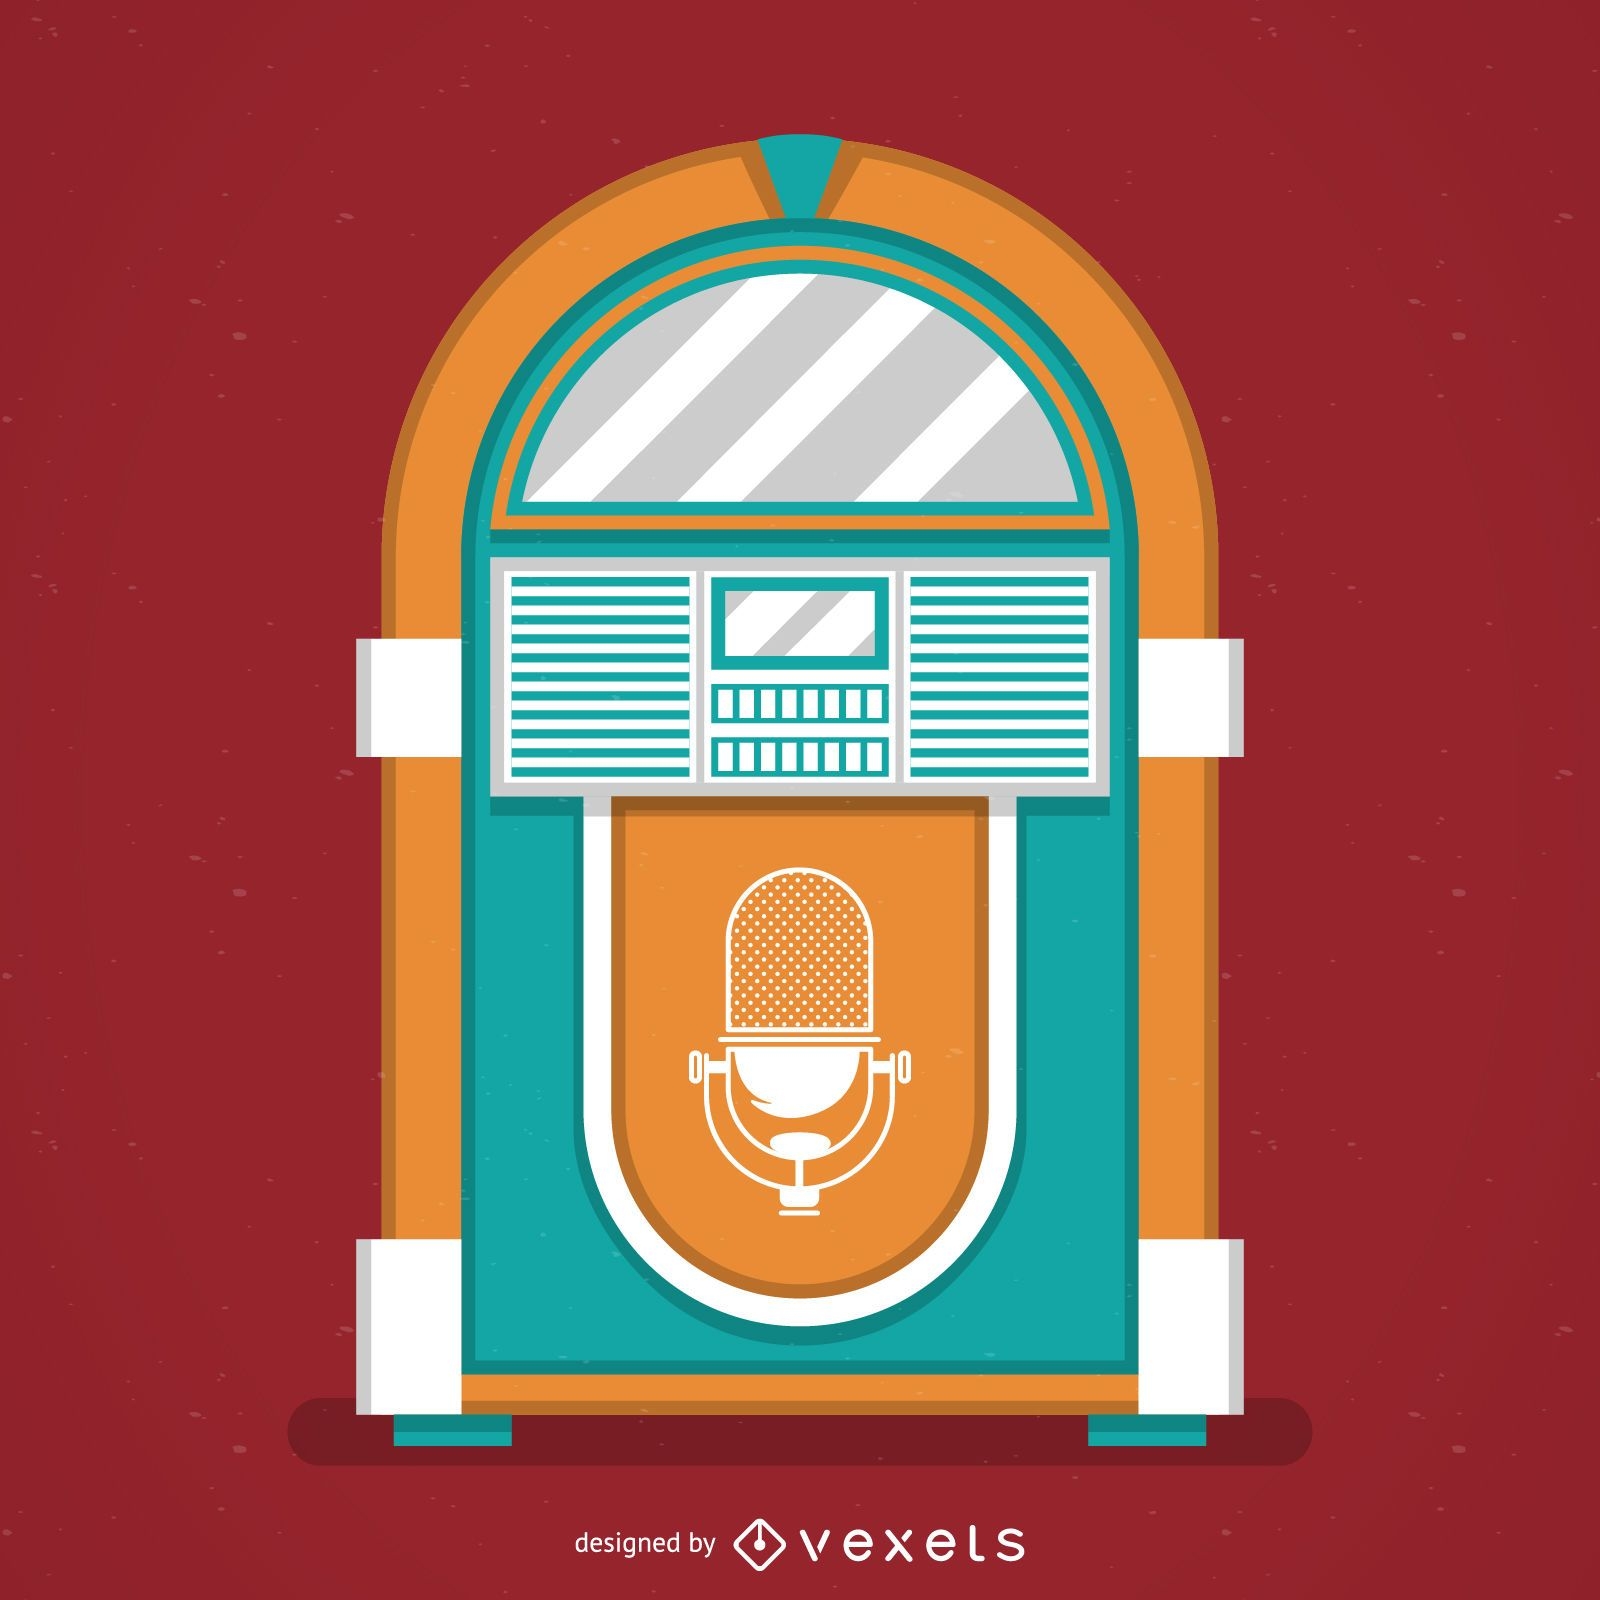 Vintage music jukebox illustration